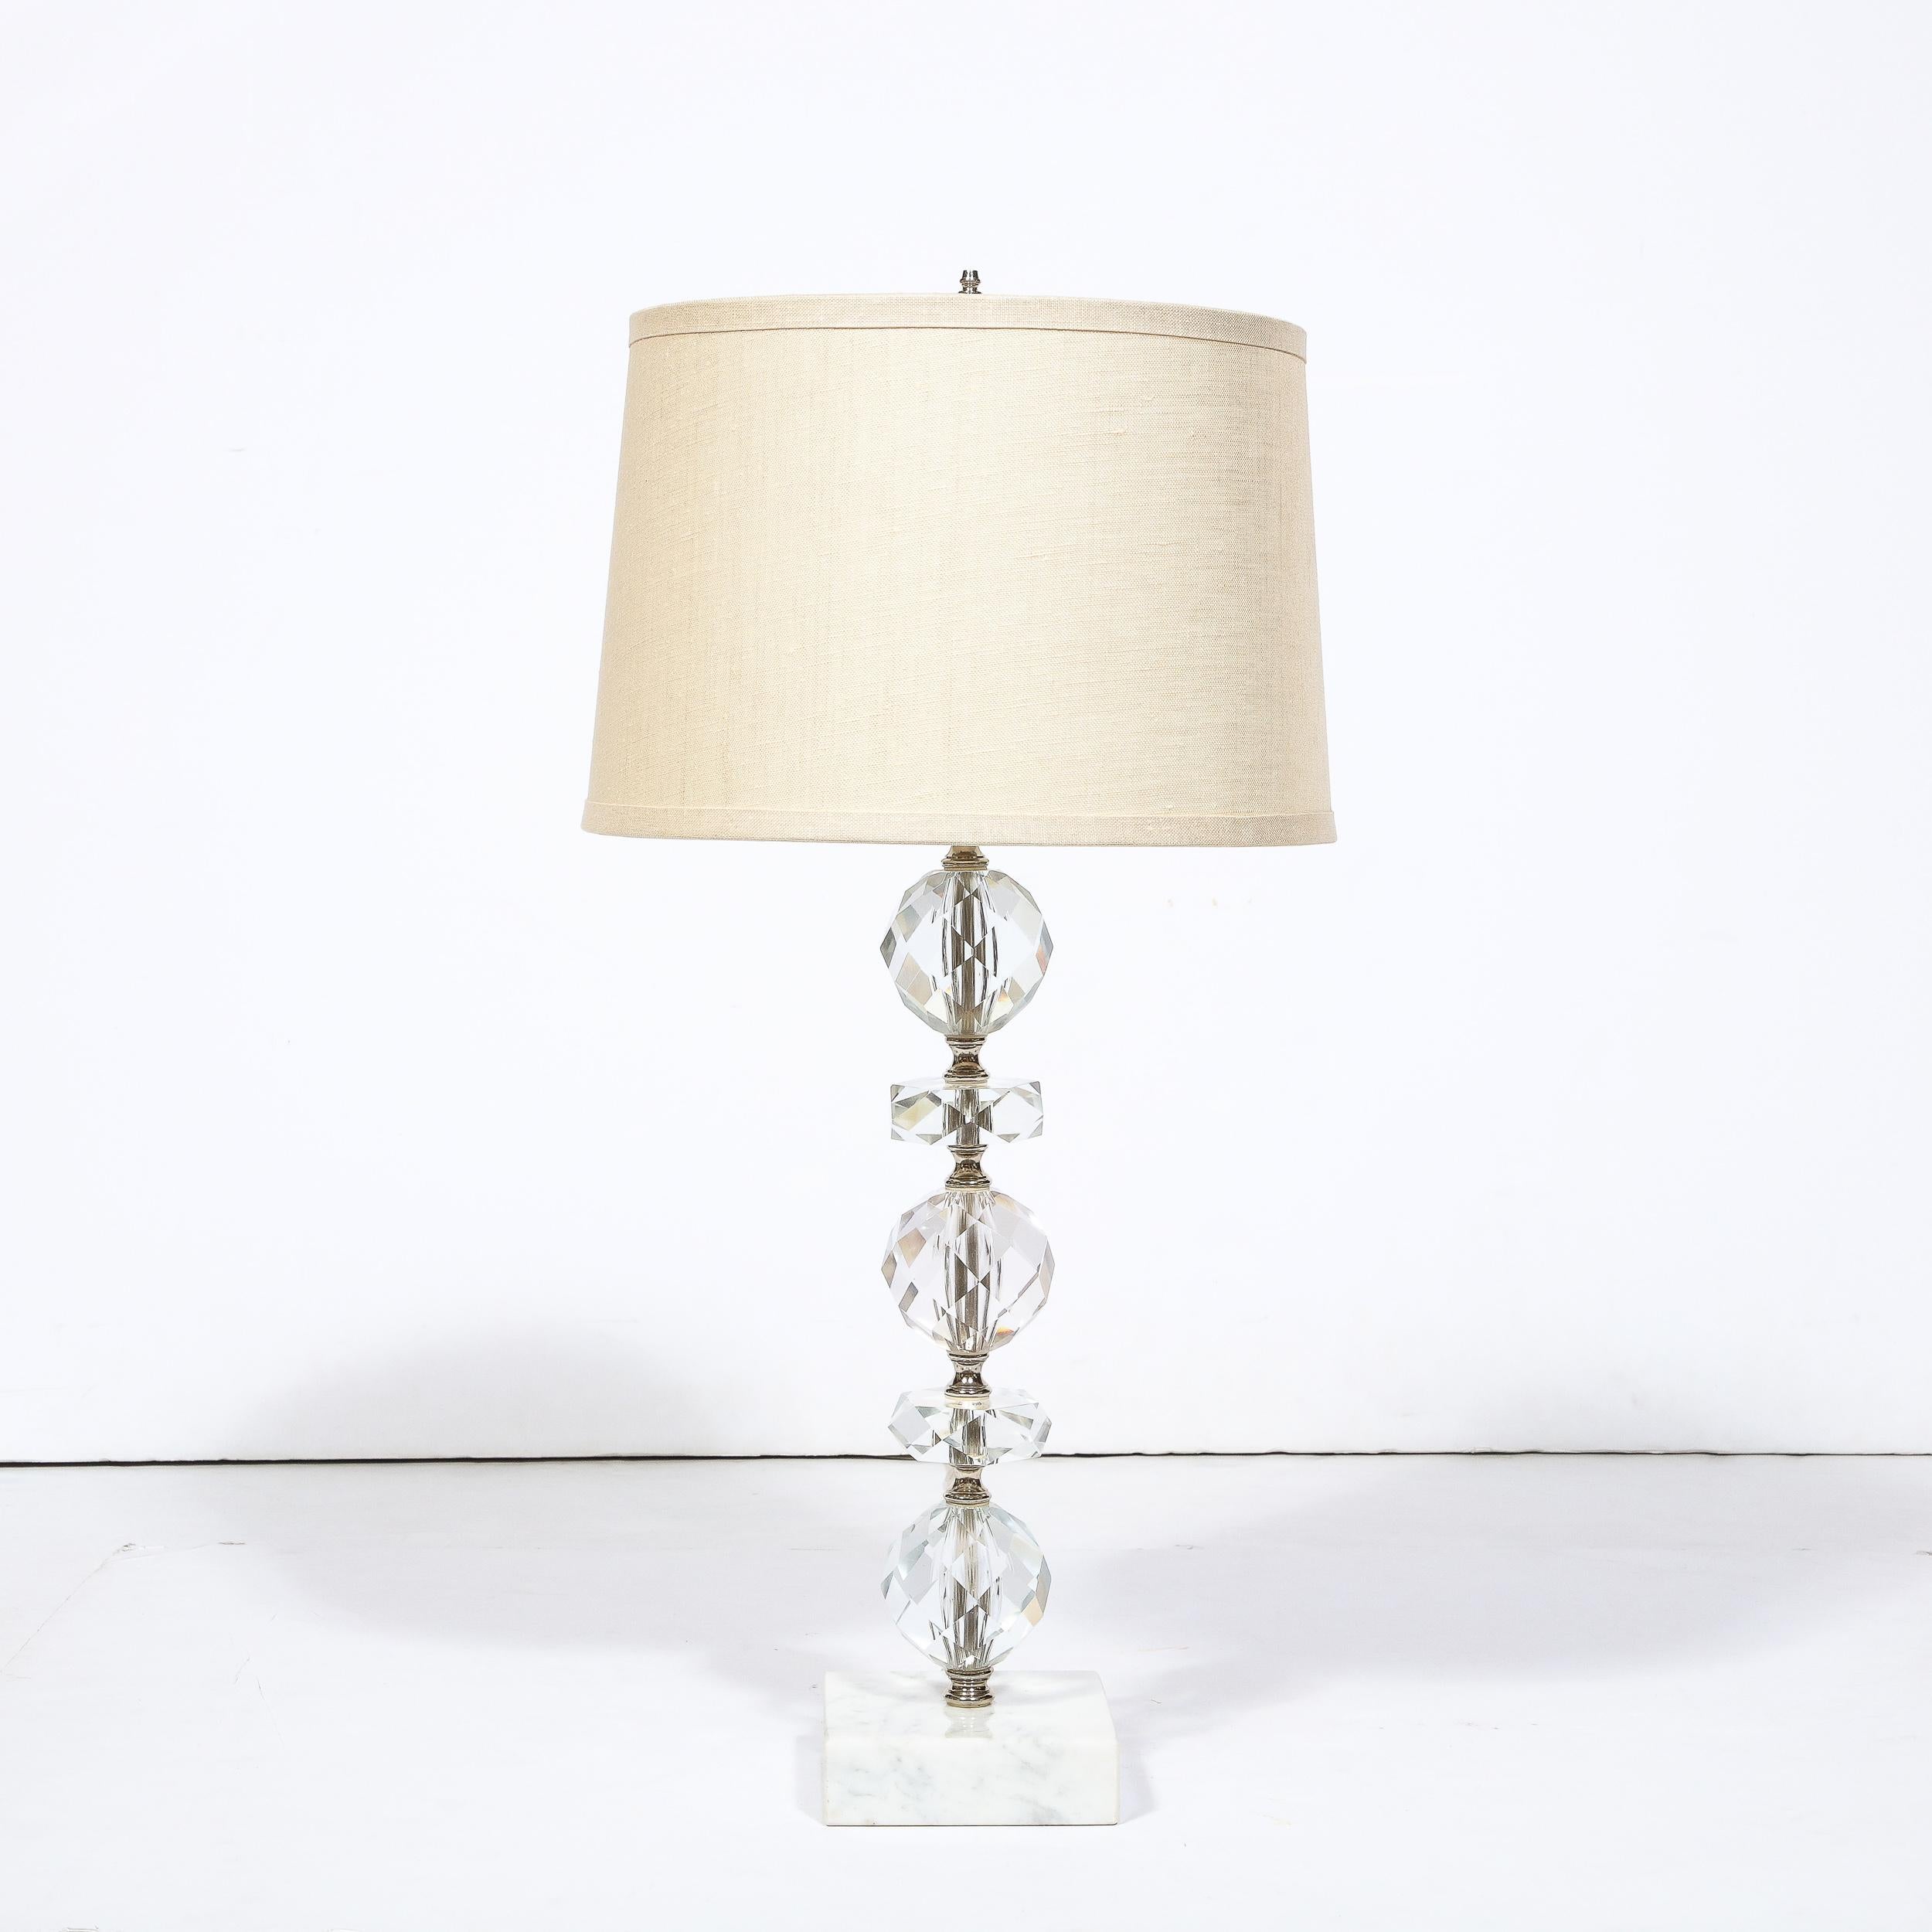 Cette charmante lampe de table Art déco en cristal taillé à facettes et base en marbre provient des États-Unis, vers 1945. Whiting est composé d'un corps en cristal taillé alternant des éléments sphériques et aplatis s'élevant sur une base